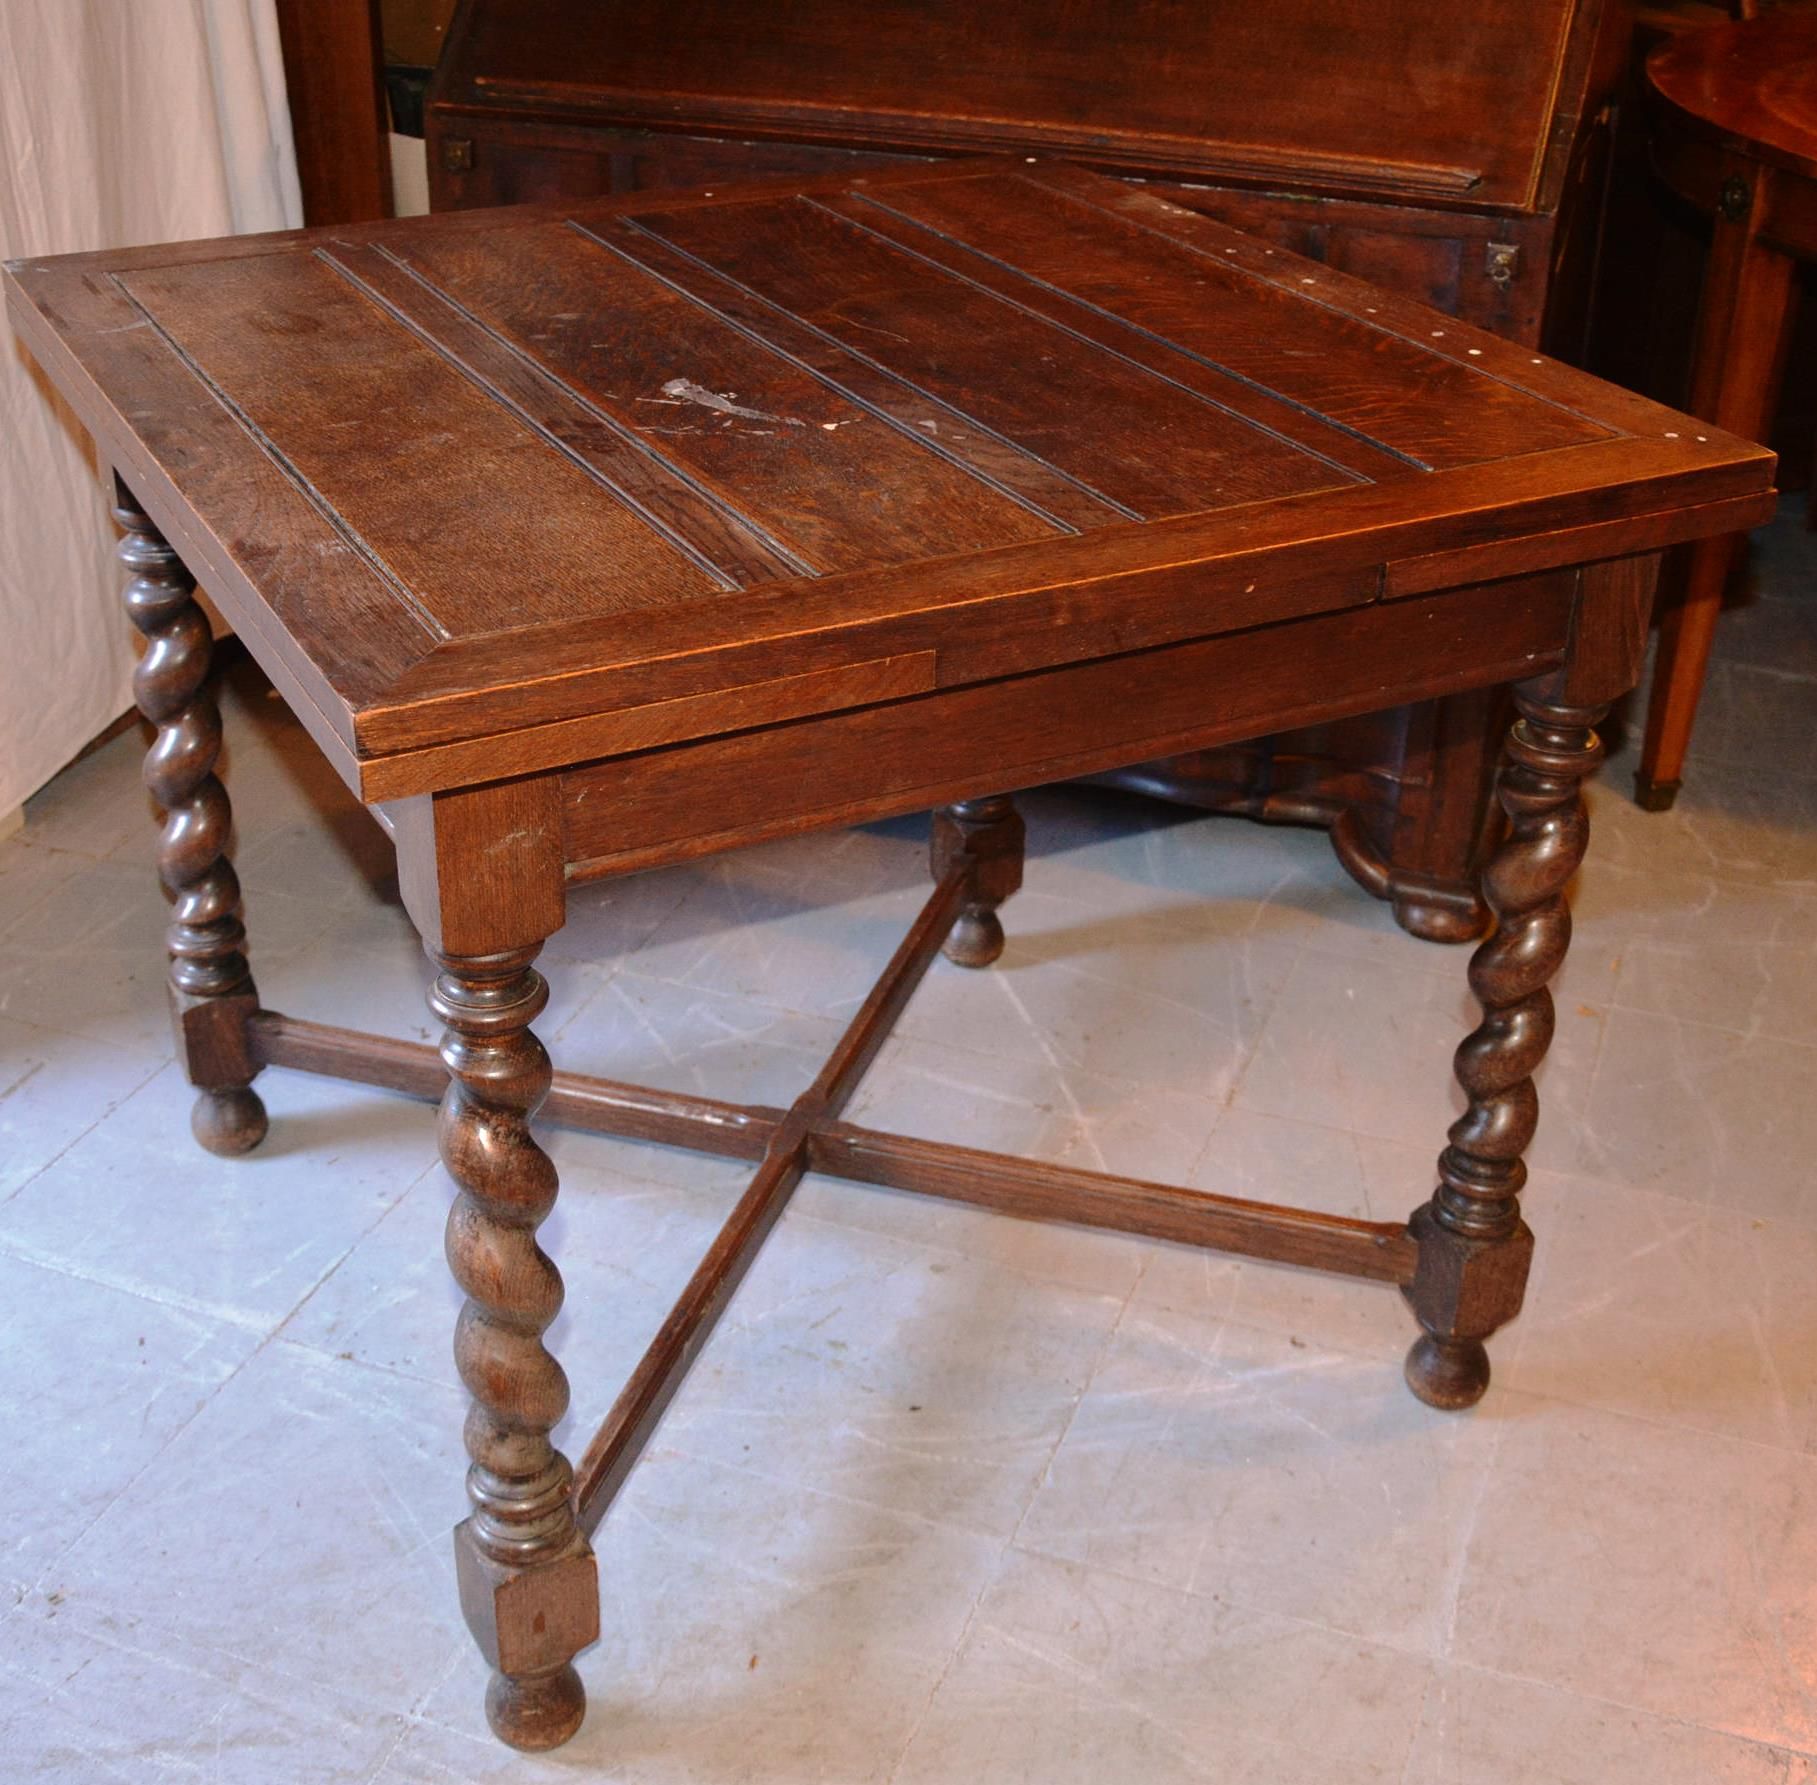 Petite table en chène Pequeña mesa de roble con cuatro patas torneadas.

Finales&hellip;